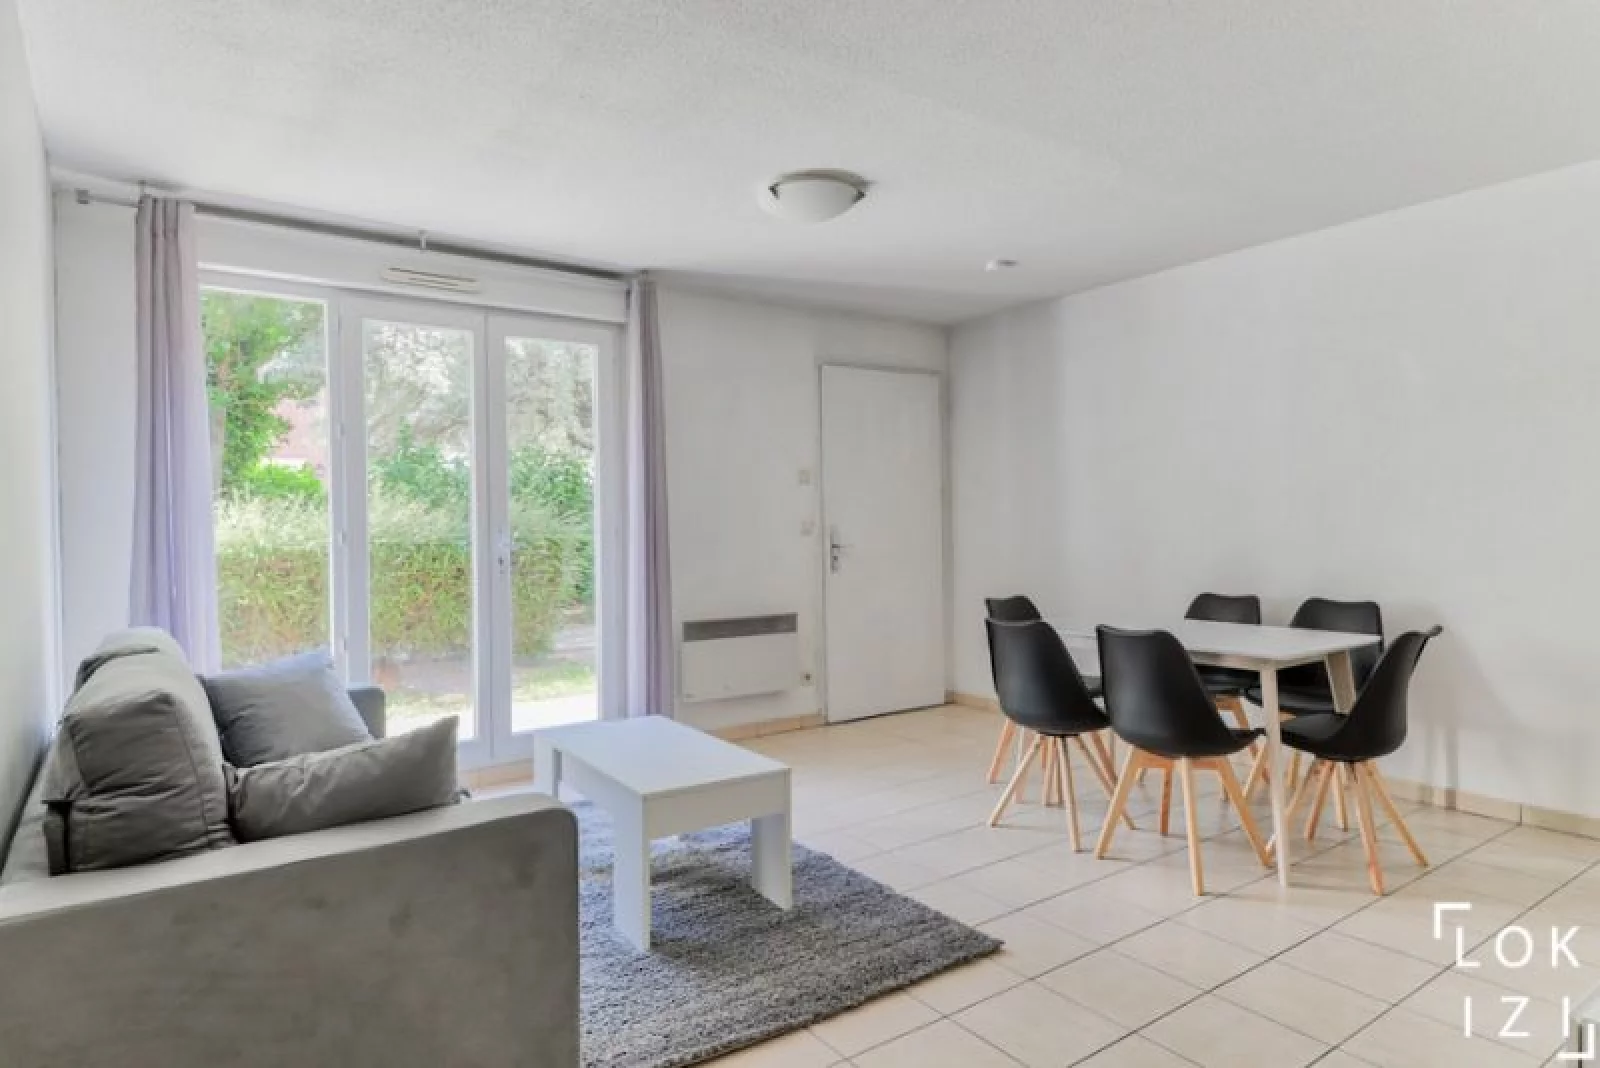 Location appartement meublé duplex 4 pièces 89.59 m² (Paris est - Bry sur Marne)